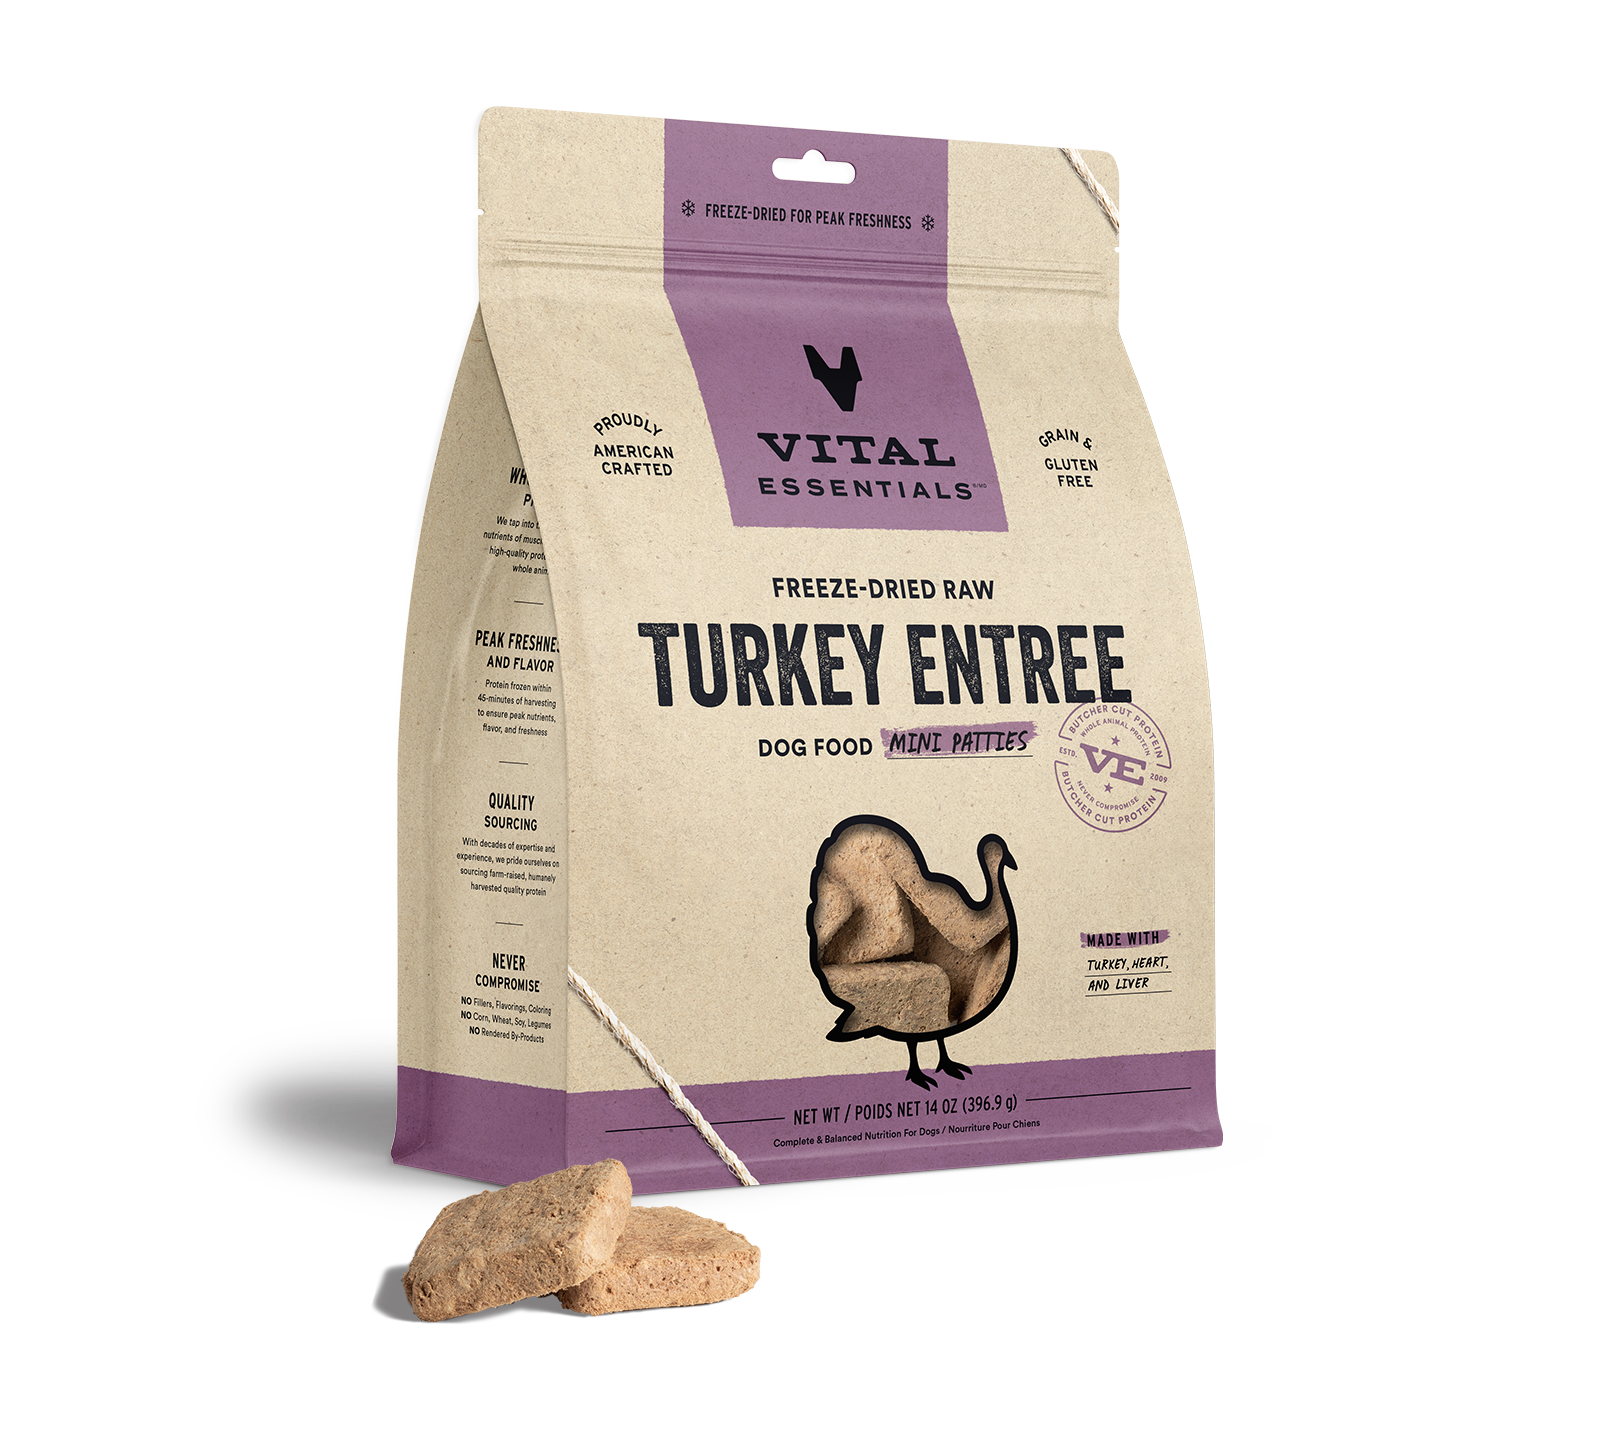 Vital Essentials Freeze-Dried Raw Turkey Entree Dog Food Mini Patties, 14 oz - Health/First Aid